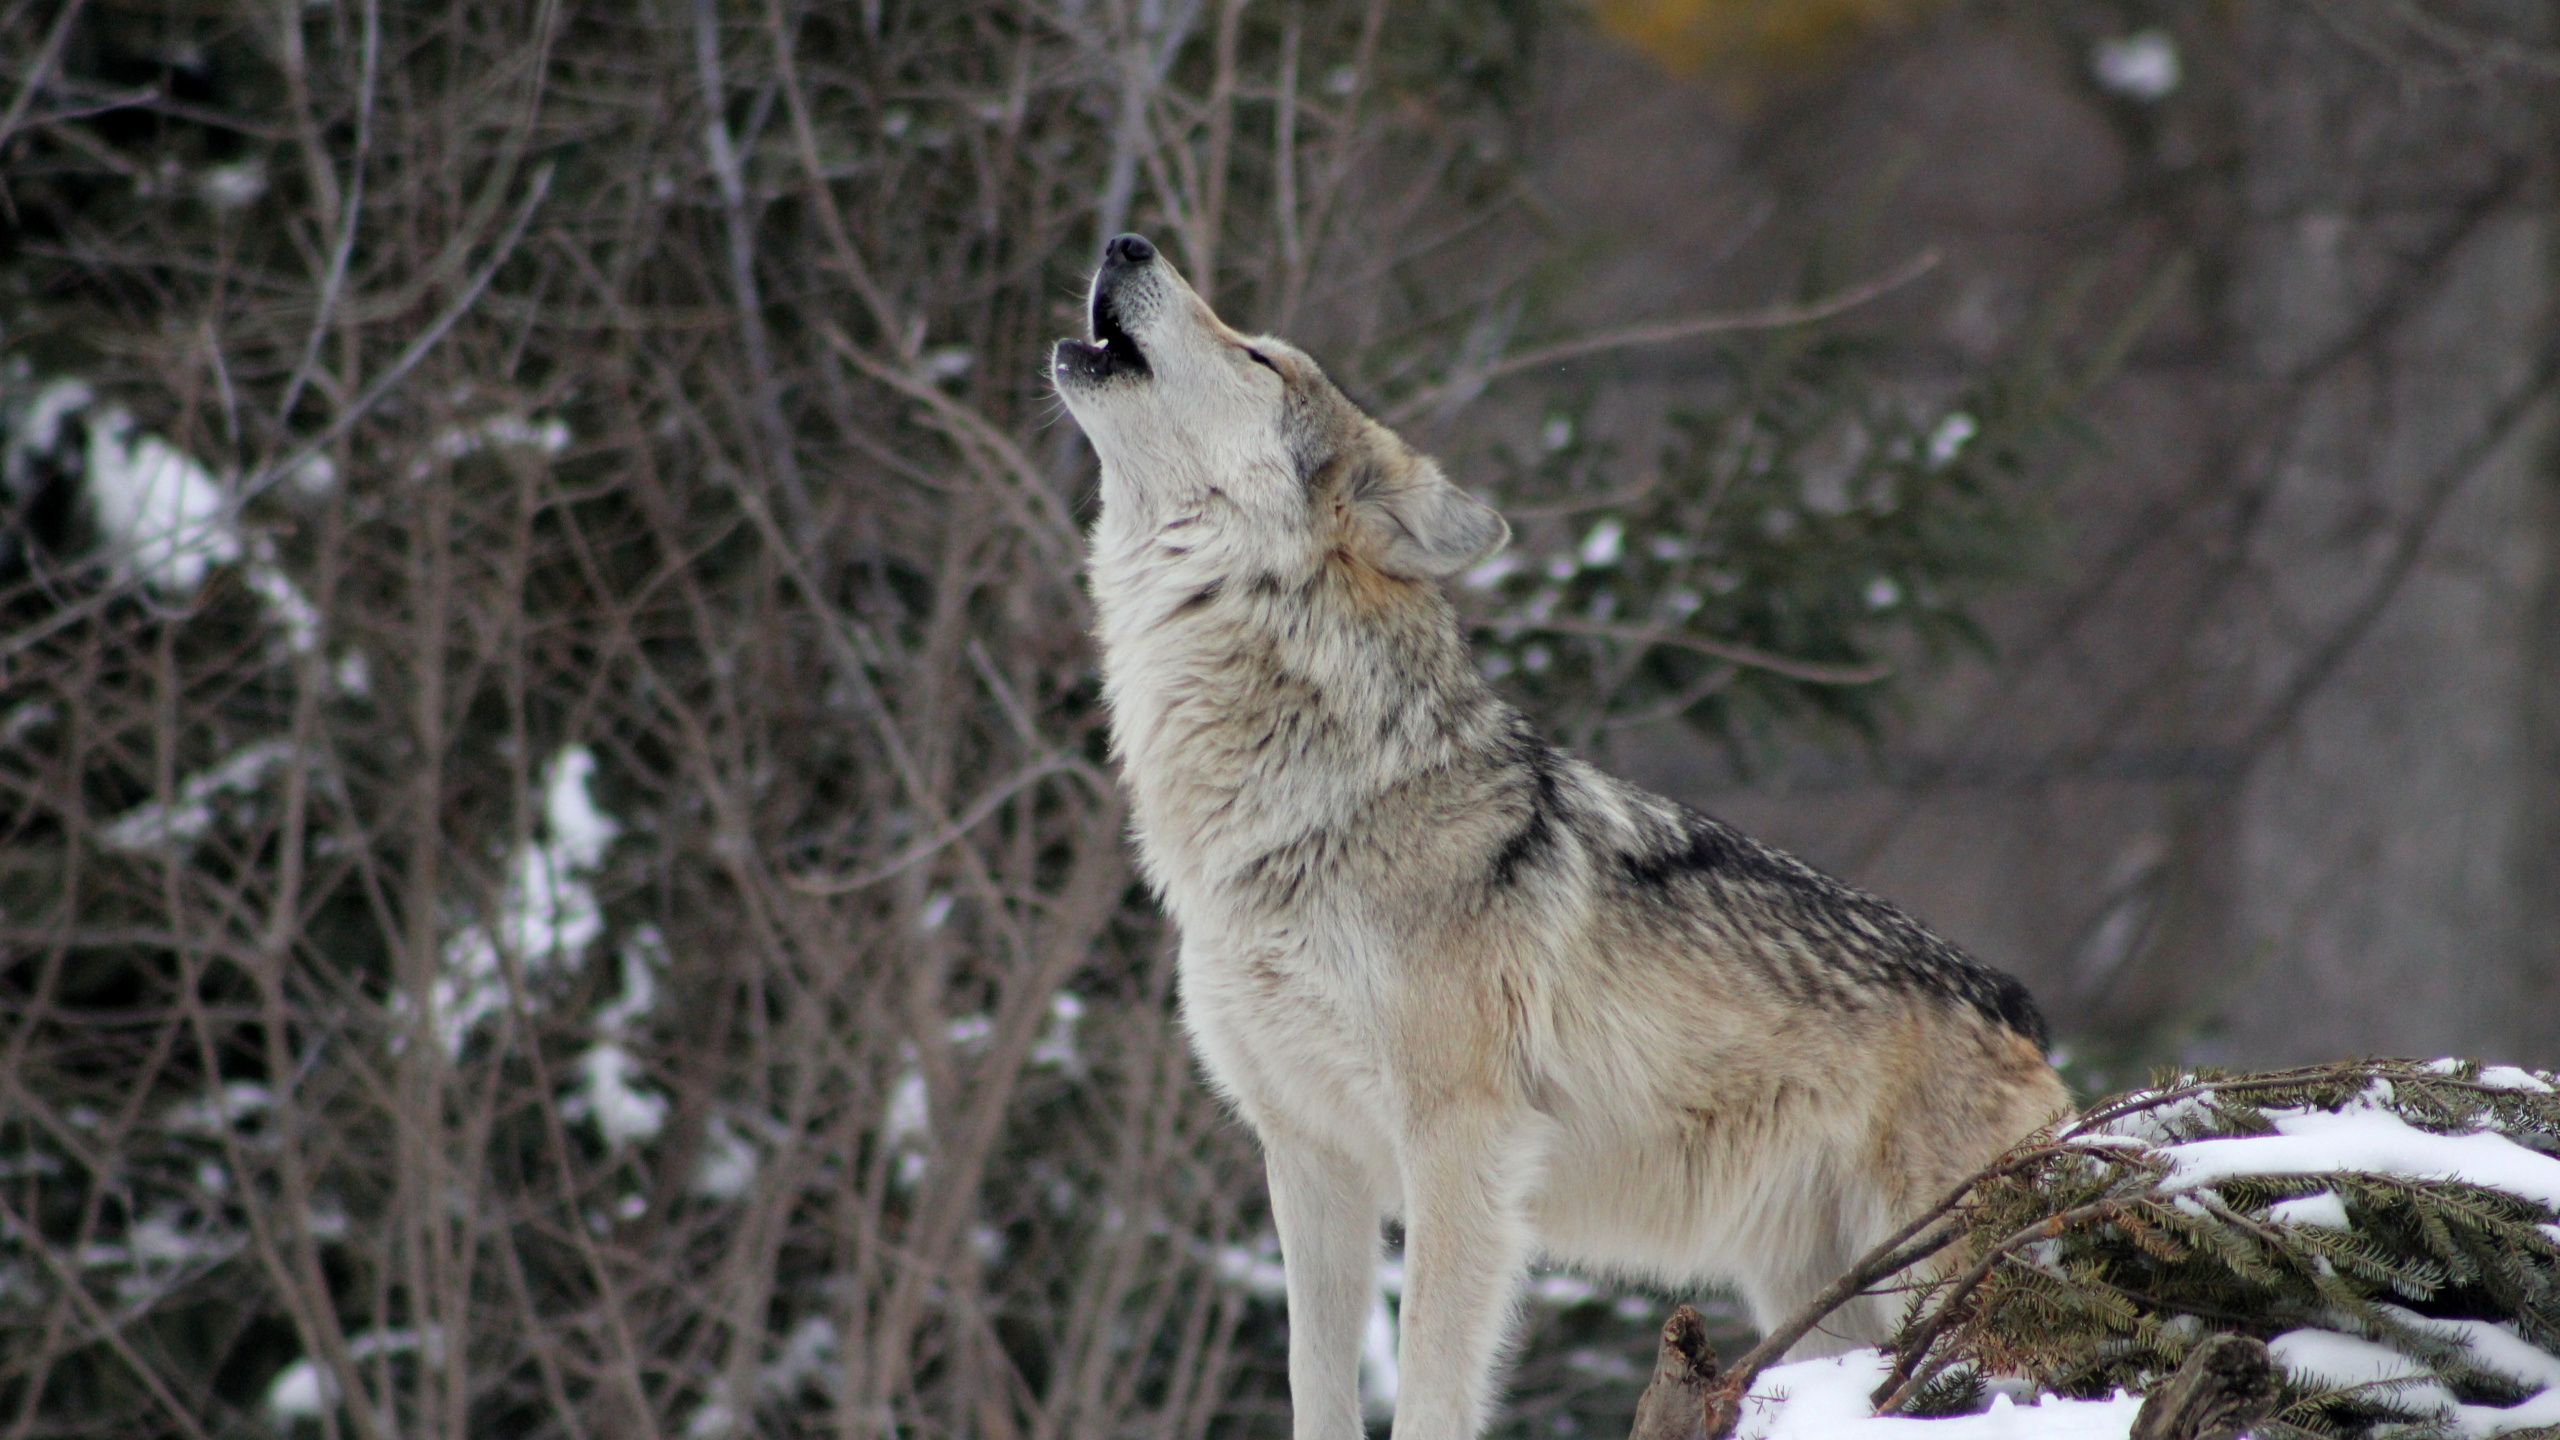 土狼, 狼, 野生动物, 那只狼狗, 狗喜欢哺乳动物 壁纸 2560x1440 允许